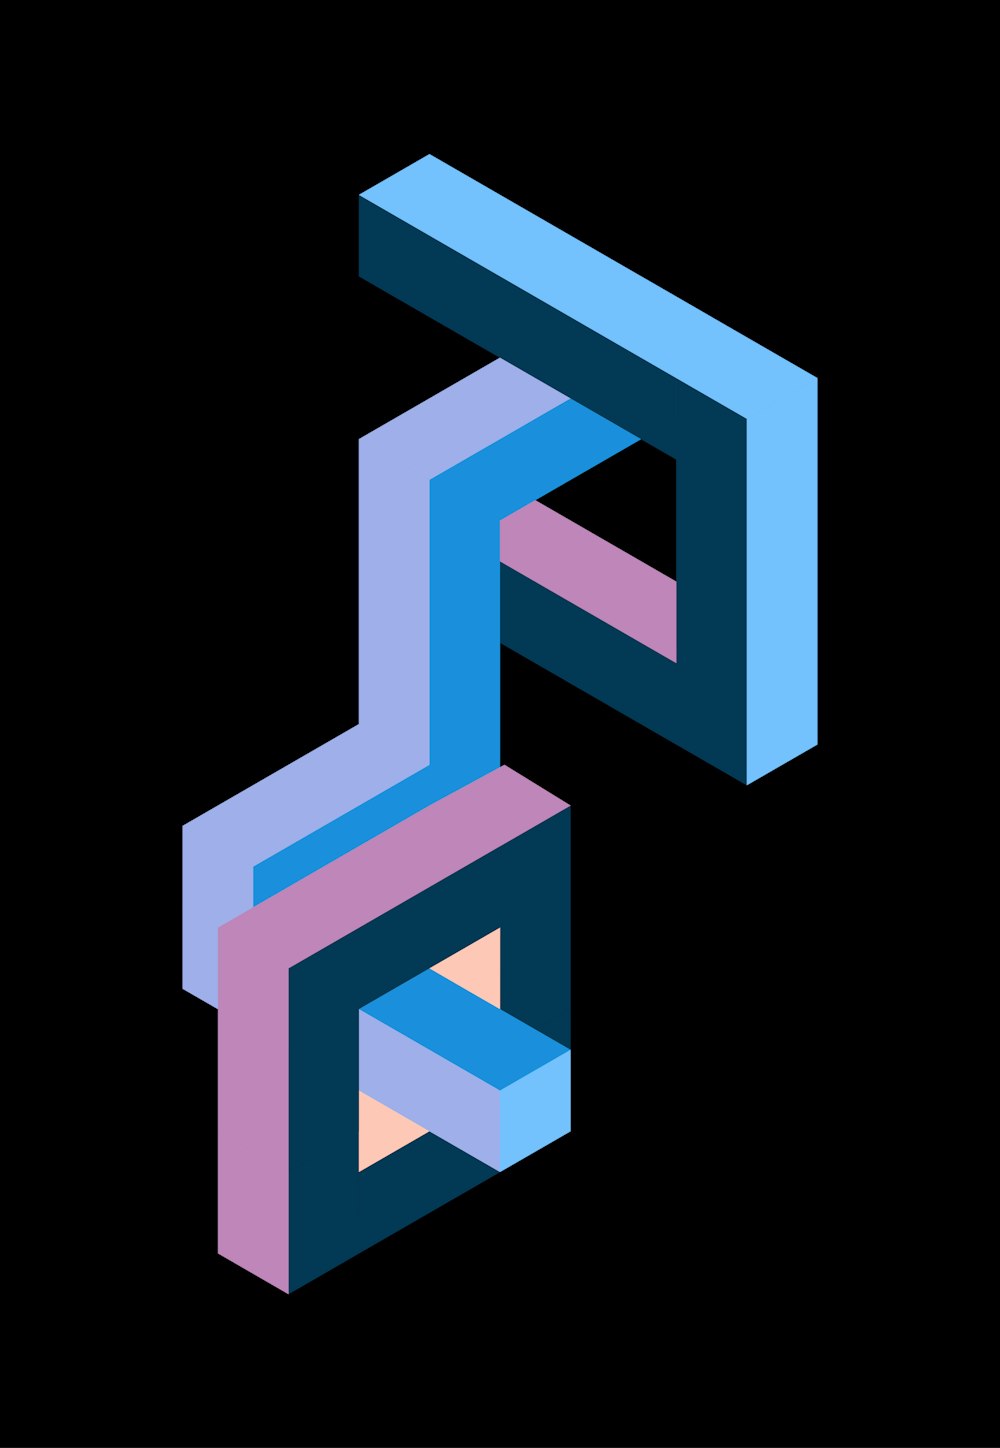 Un logo stilizzato di una lettera P in blu, rosa e viola